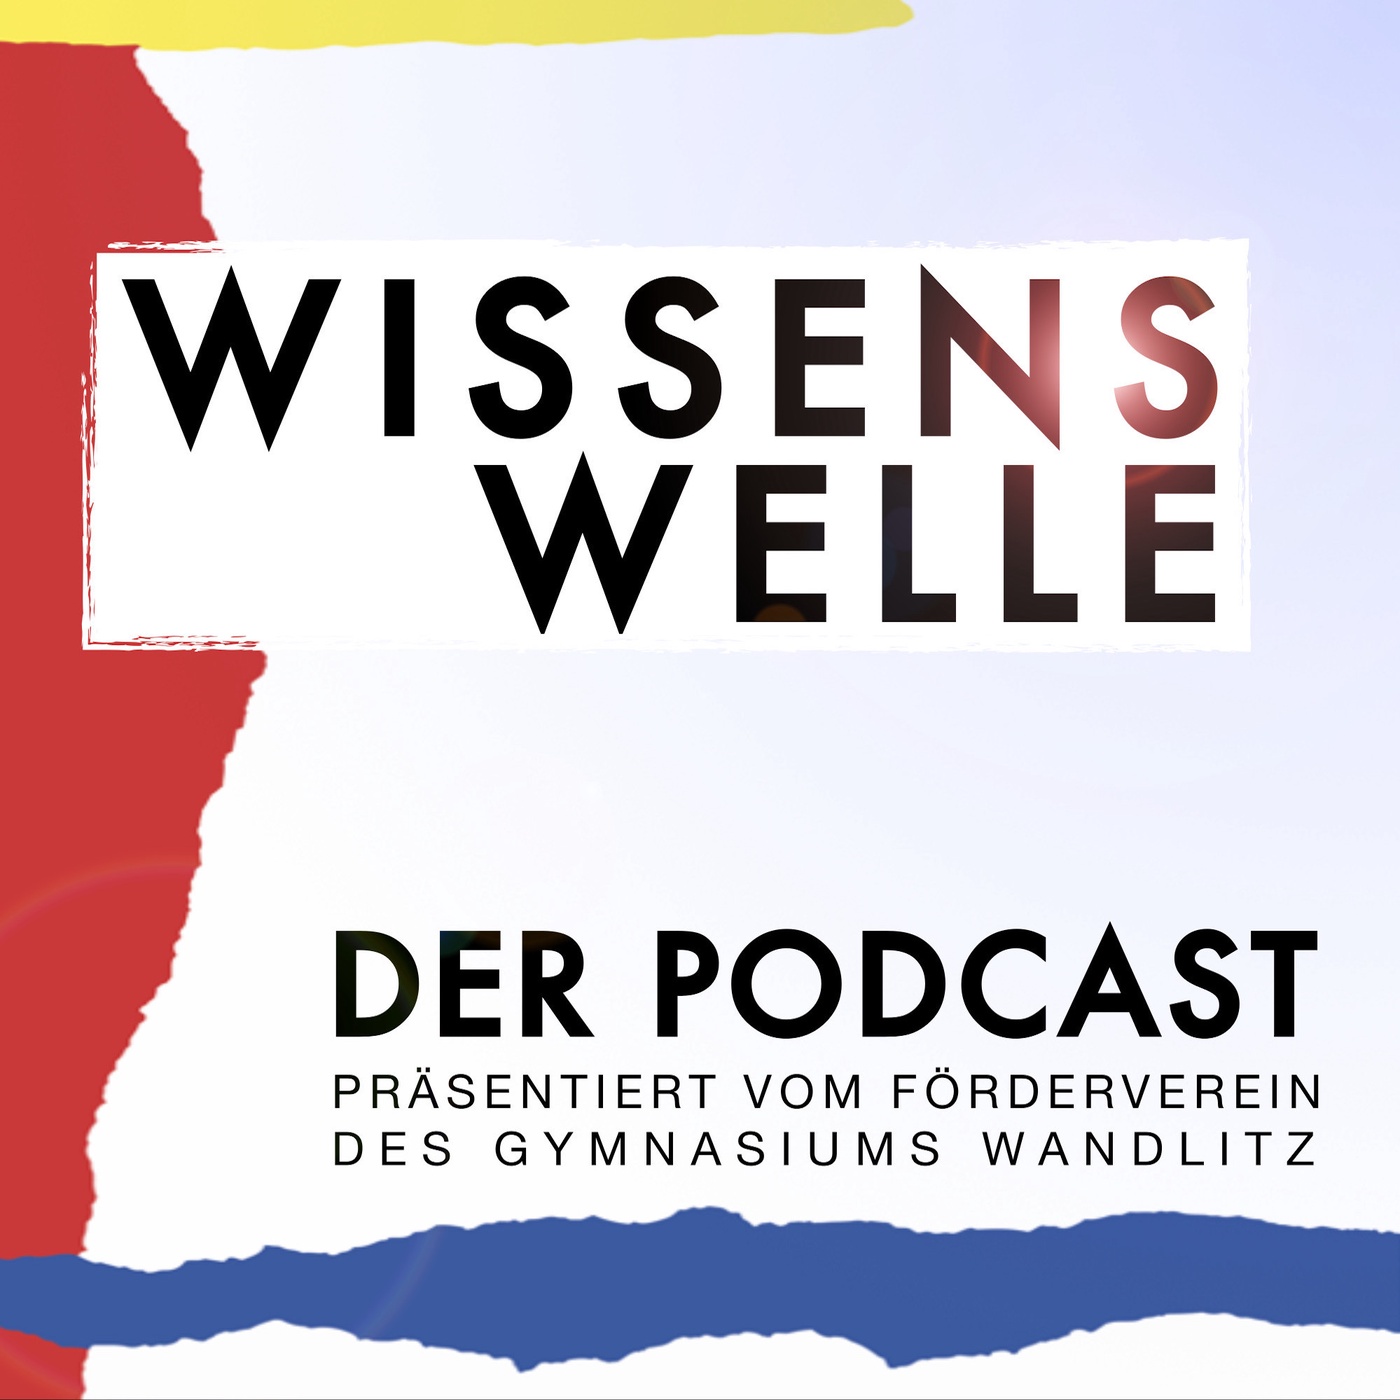 Wissenswelle Wandlitz - Der Podcast präsentiert vom Förderverein des Gymnasiums Wandlitz